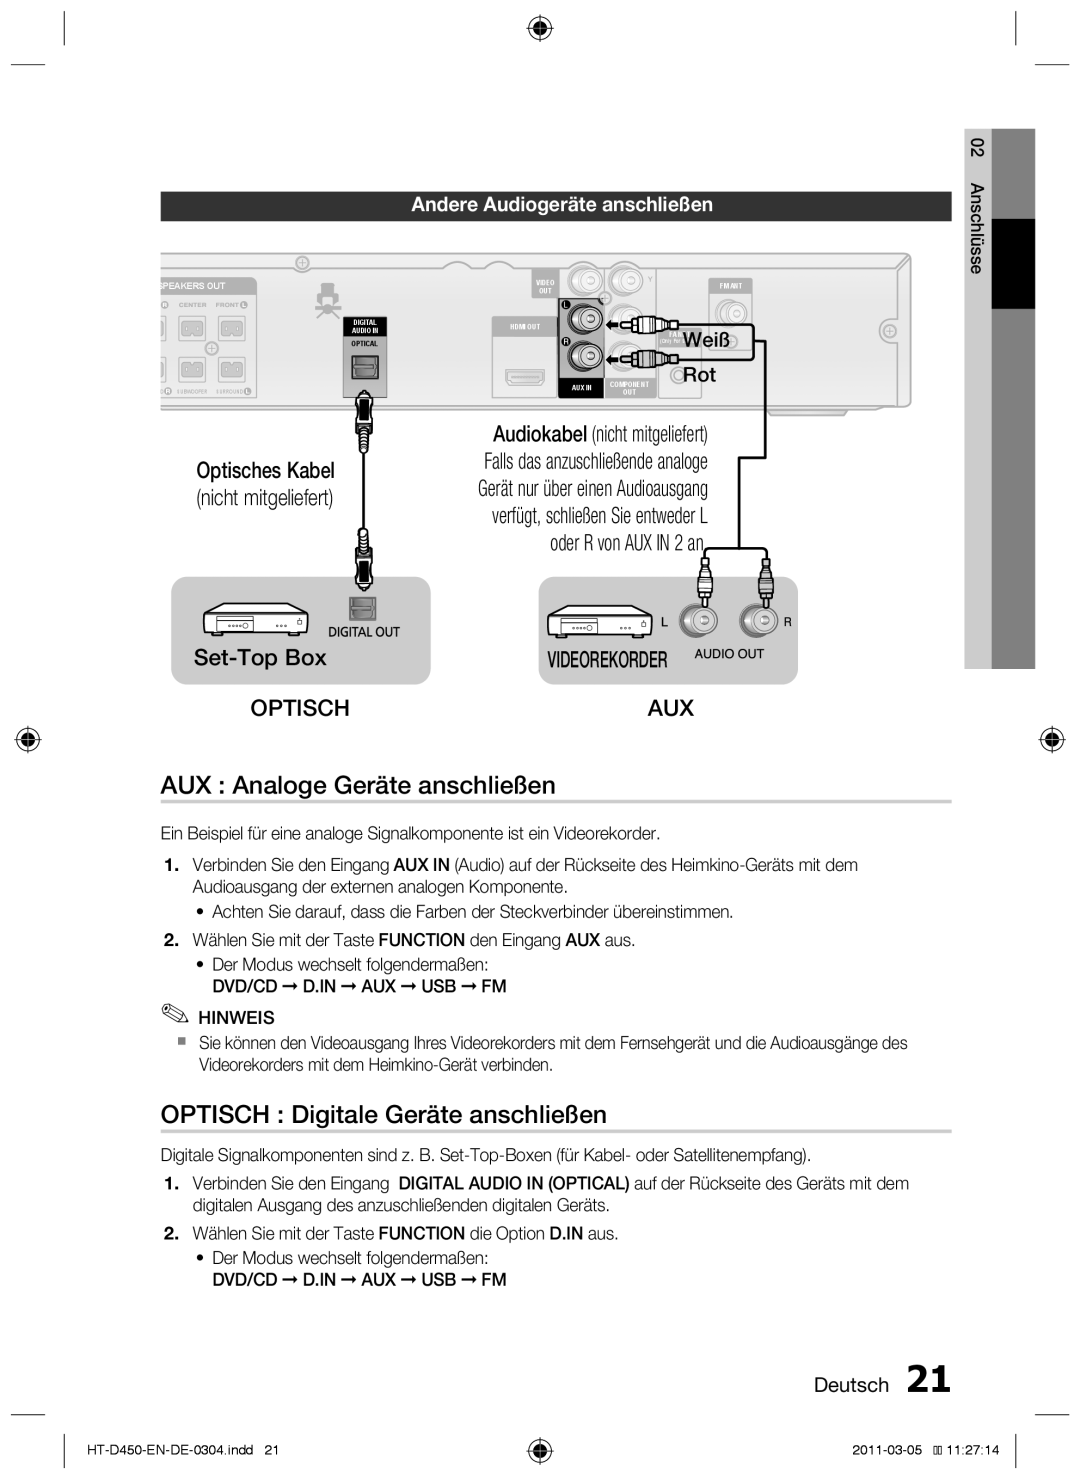 Samsung HT-D450 AUX : Analoge Geräte anschließen, OPTISCH Digitale Geräte anschließen, Set-TopBox OPTISCH, Weiß Rot 